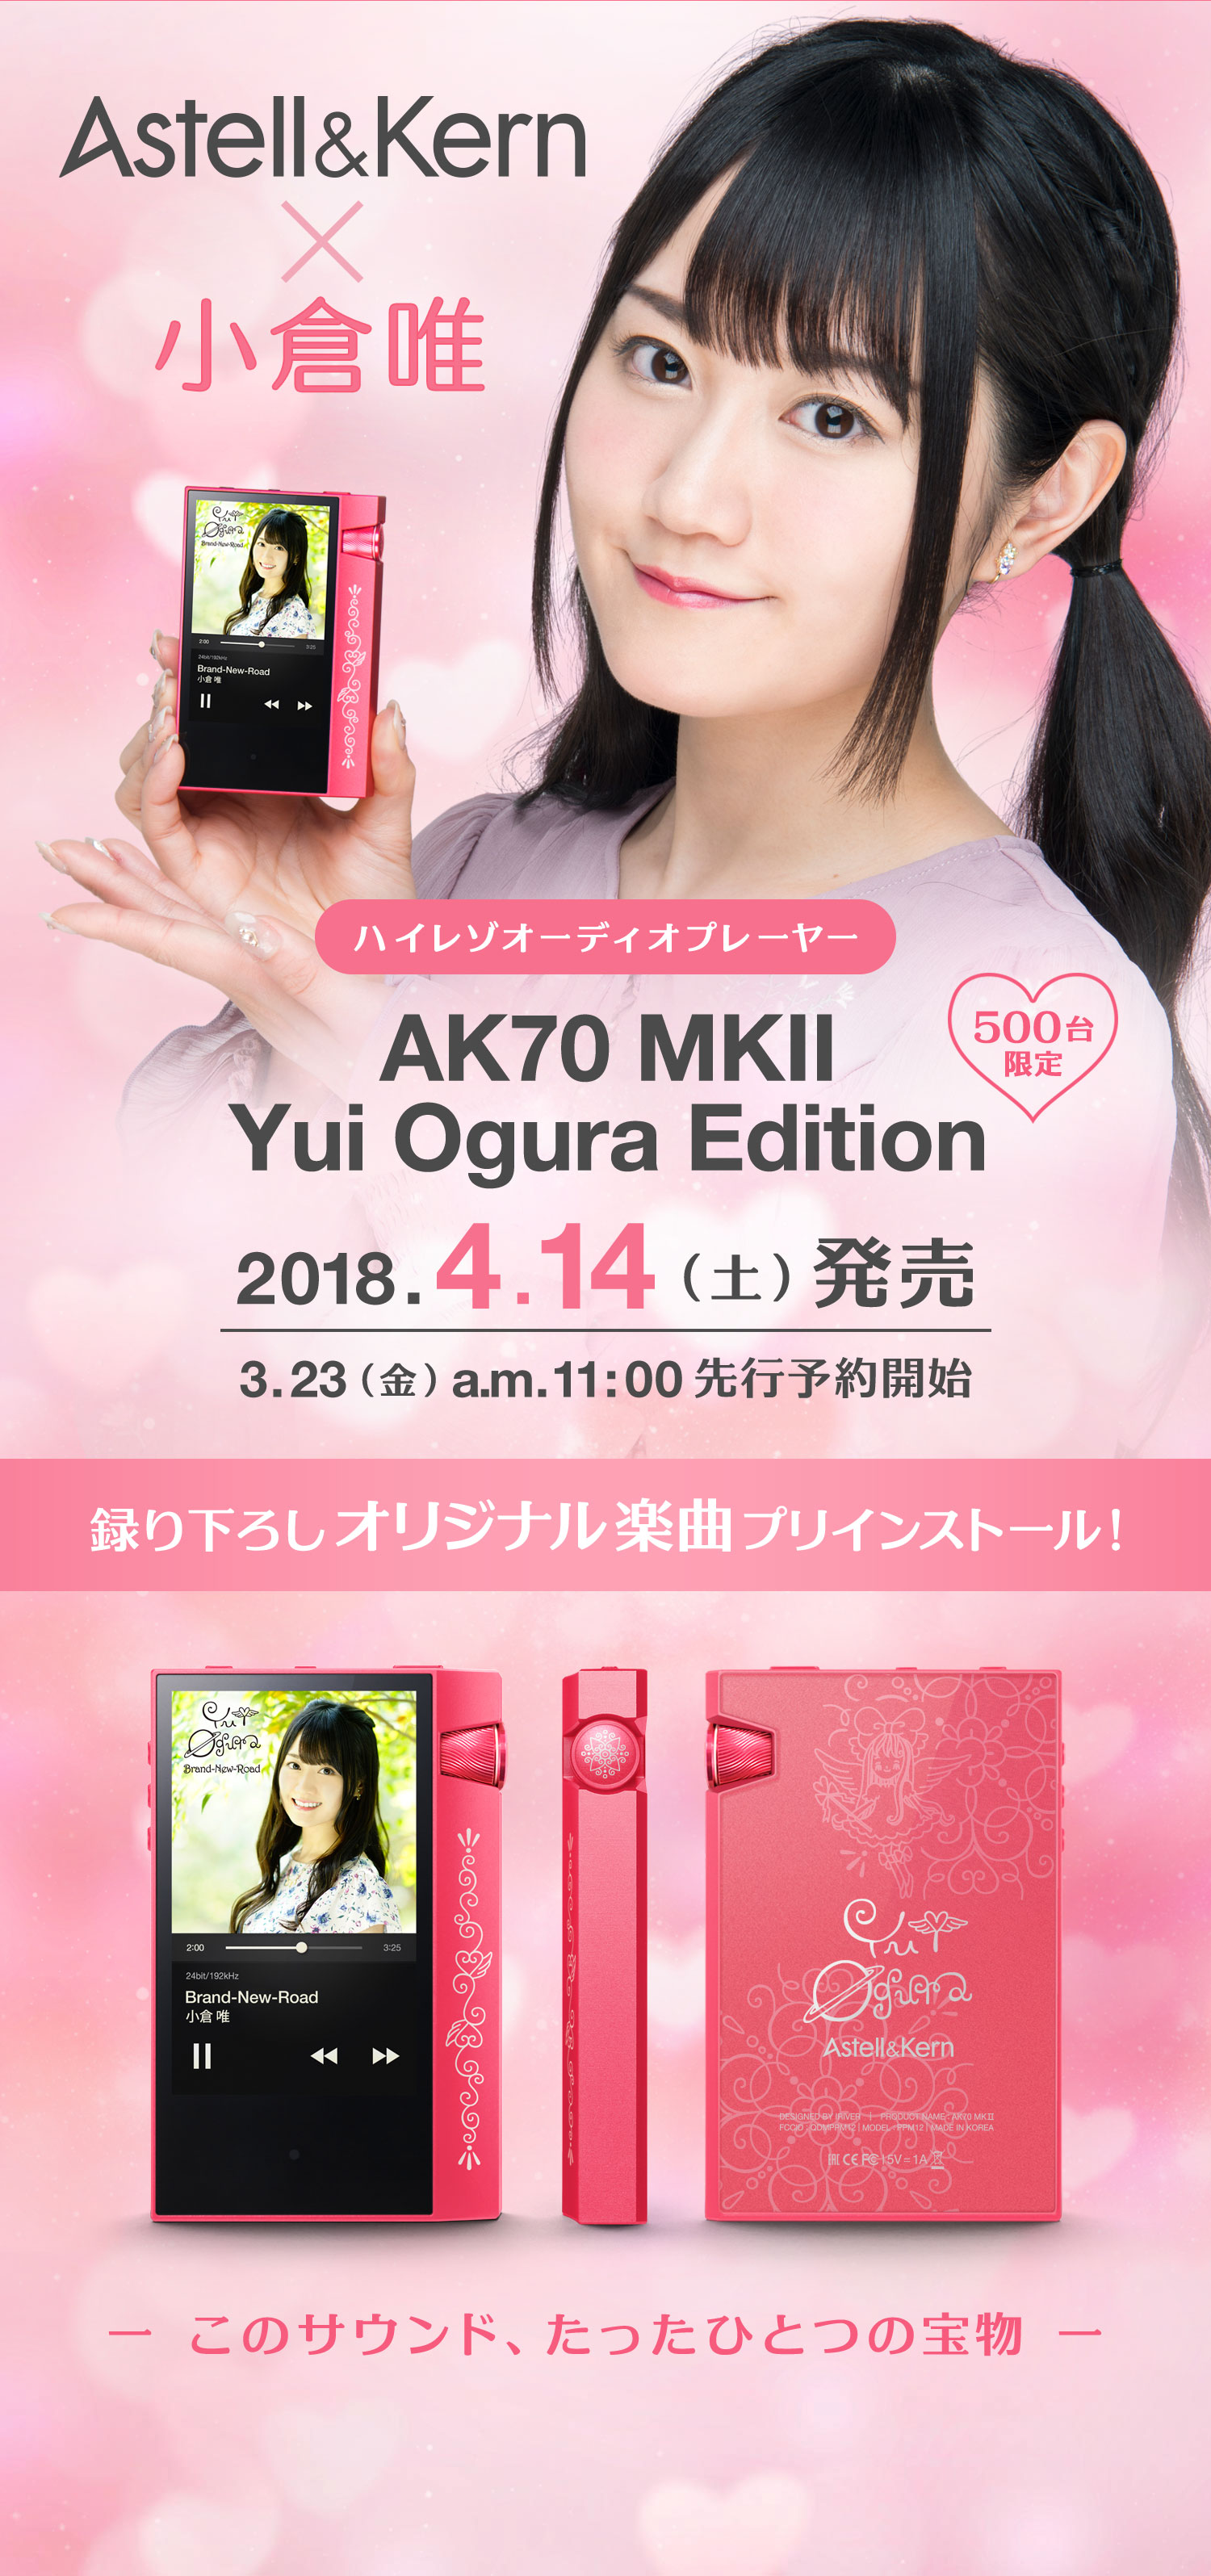 AK70 MKII Yui Ogura Edition Astell&Kern × 小倉唯